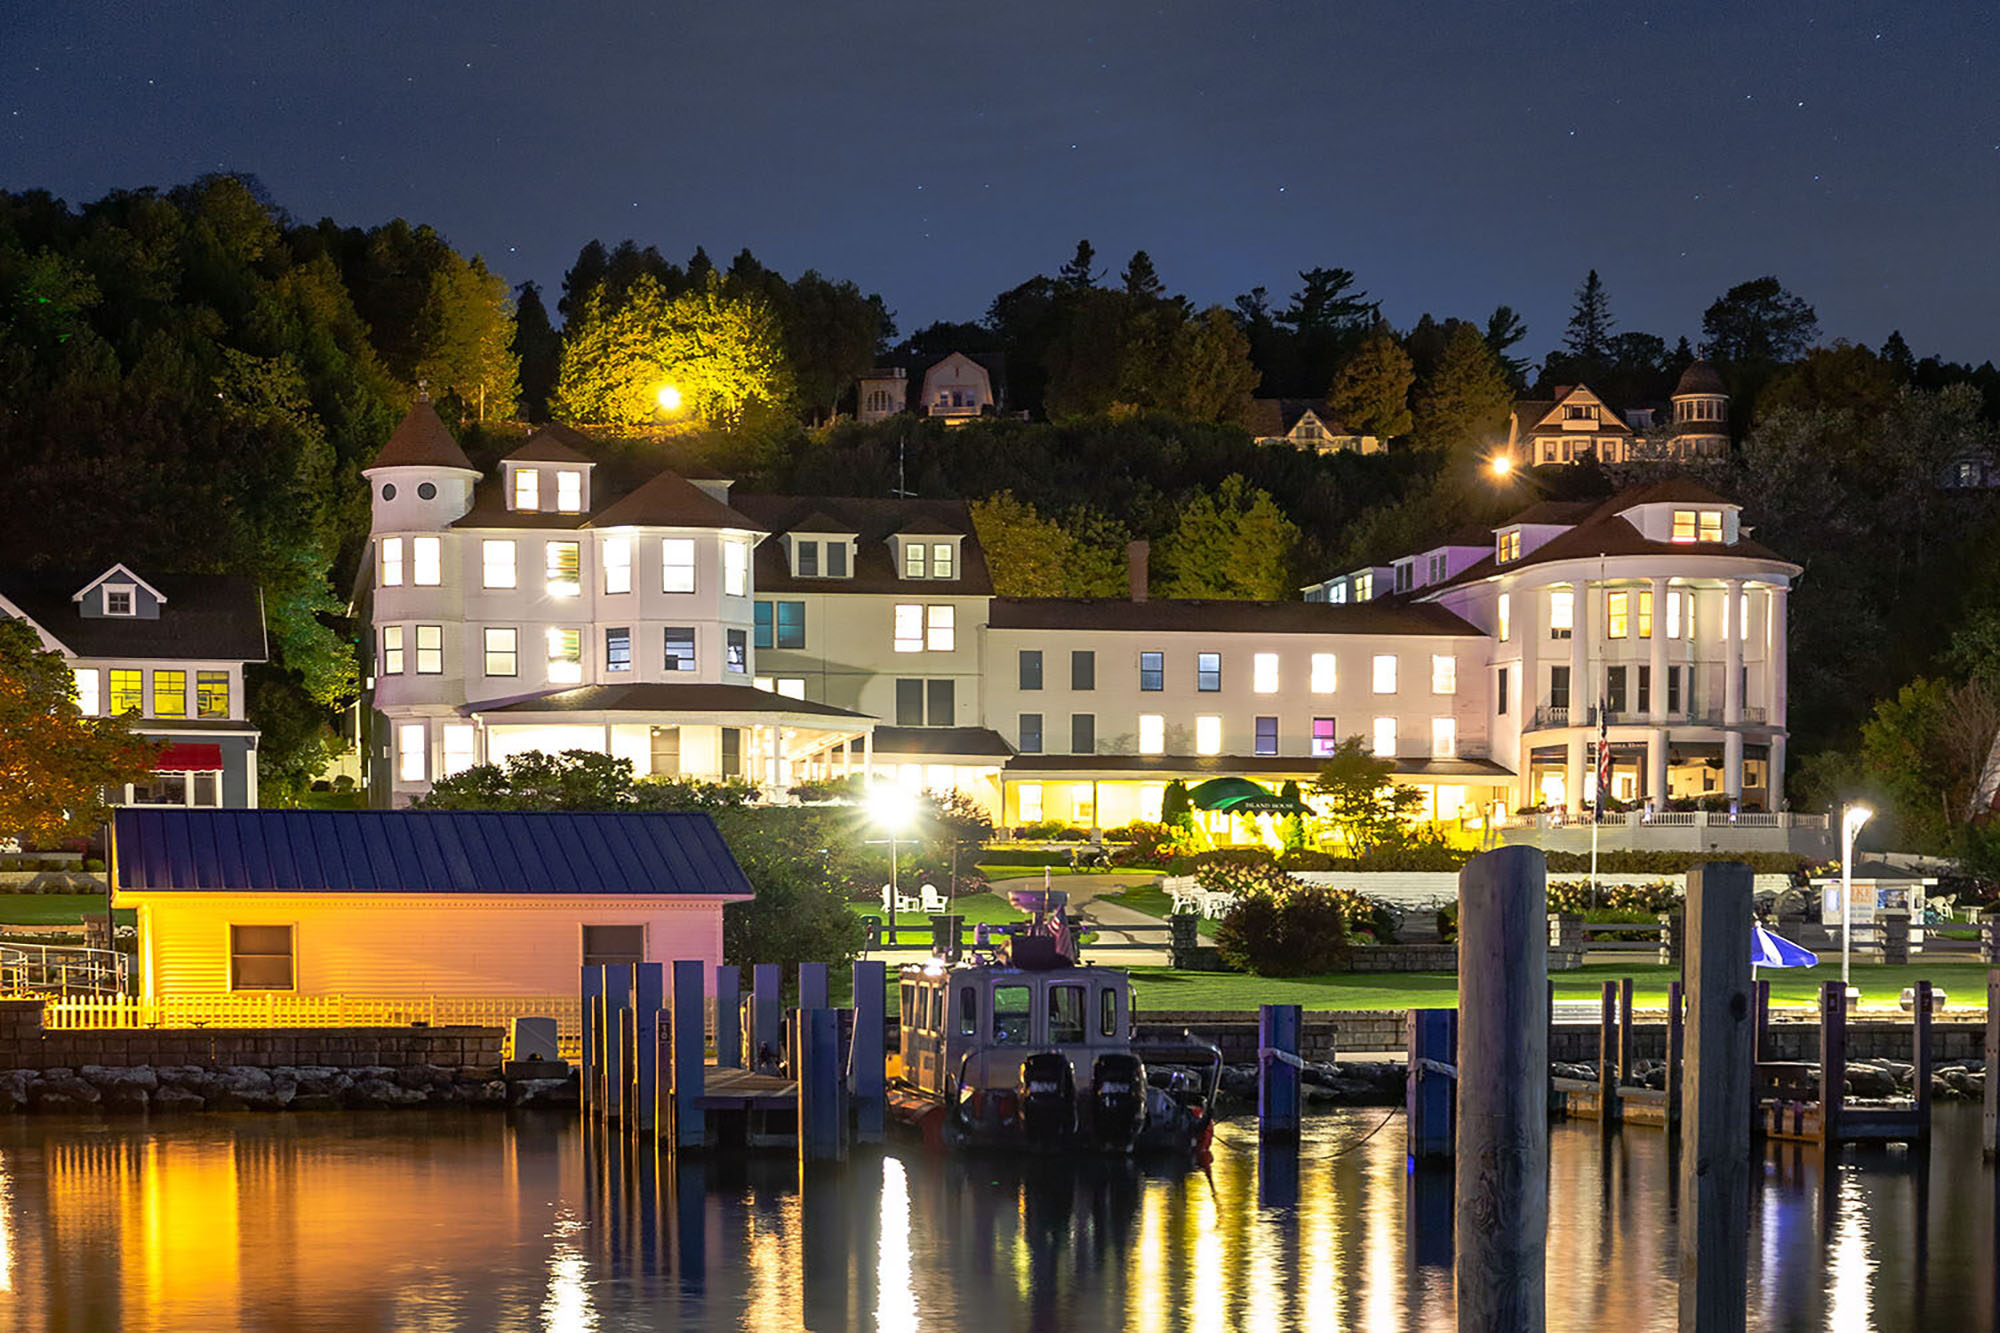 island house hotel from marina at night